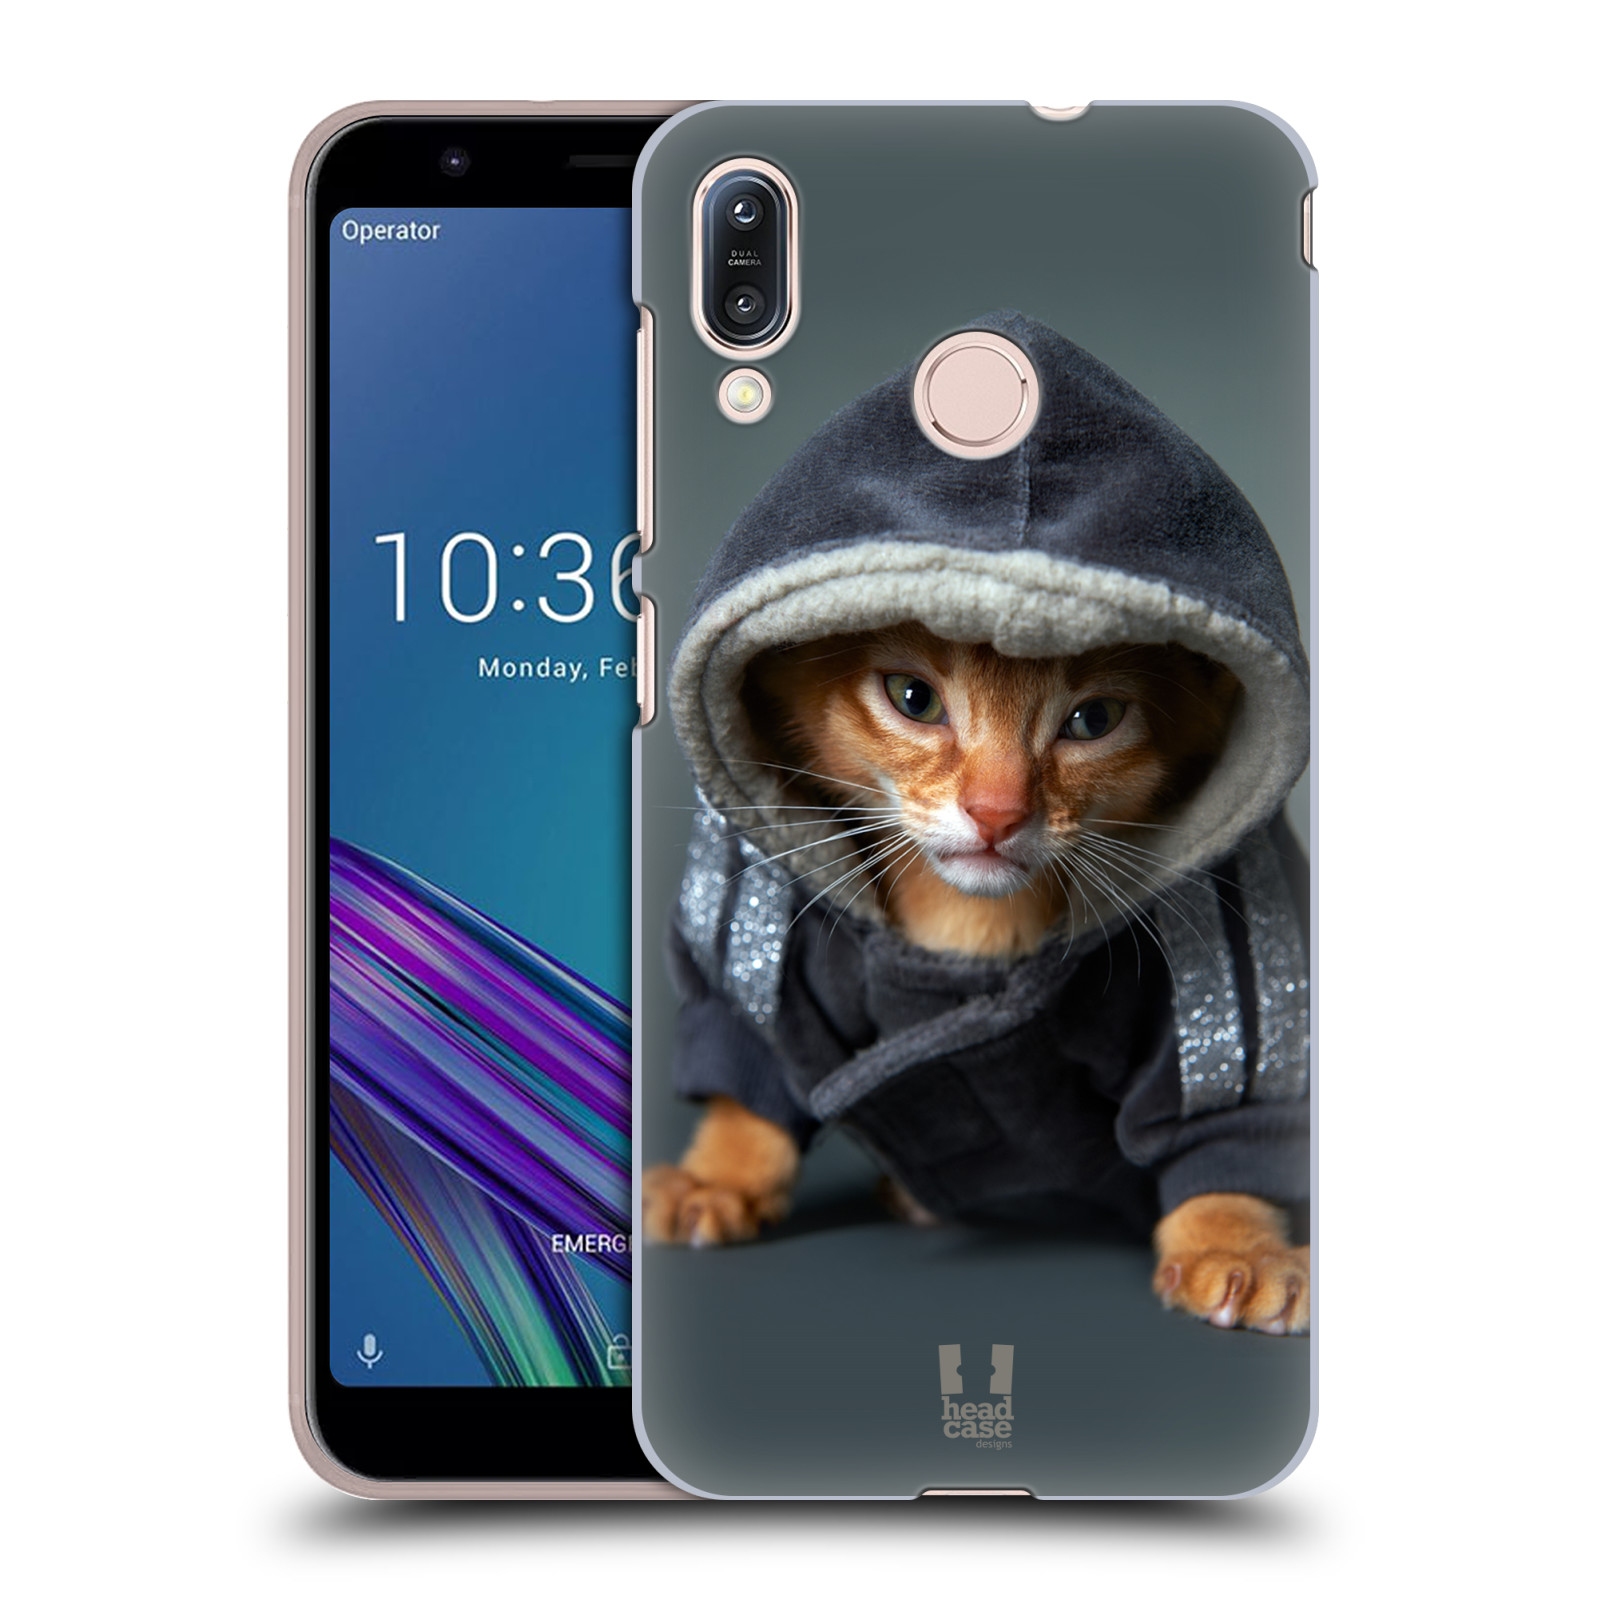 Pouzdro na mobil Asus Zenfone Max M1 (ZB555KL) - HEAD CASE - vzor Legrační zvířátka kotě/kočička s kapucí